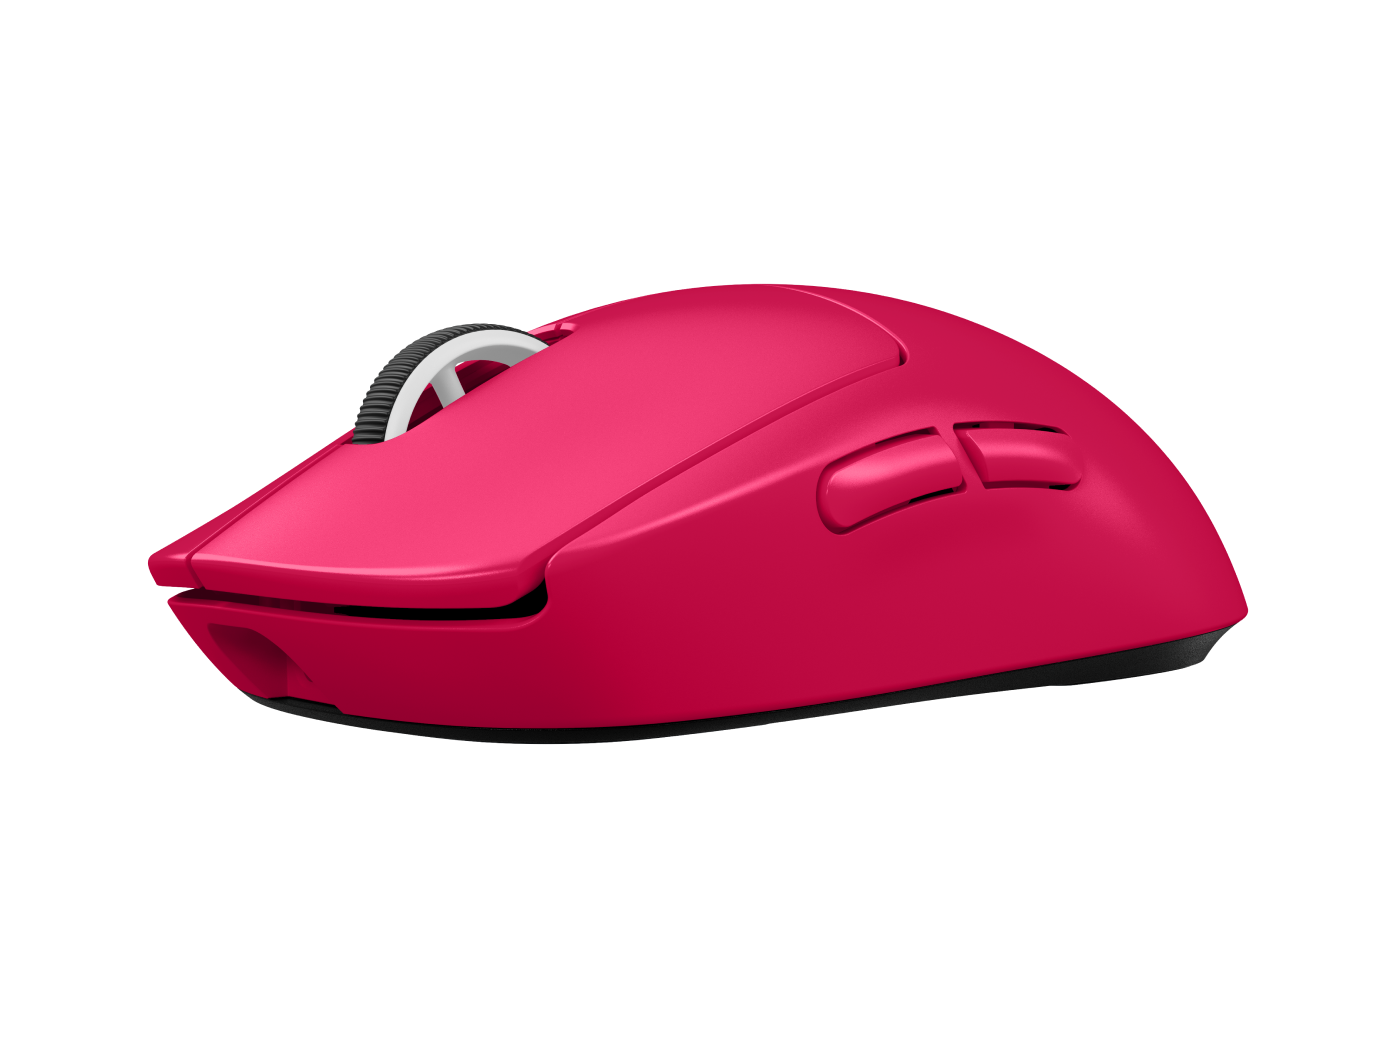 ロジクールG PRO X 2 Superlight Wireless Gaming Mouse